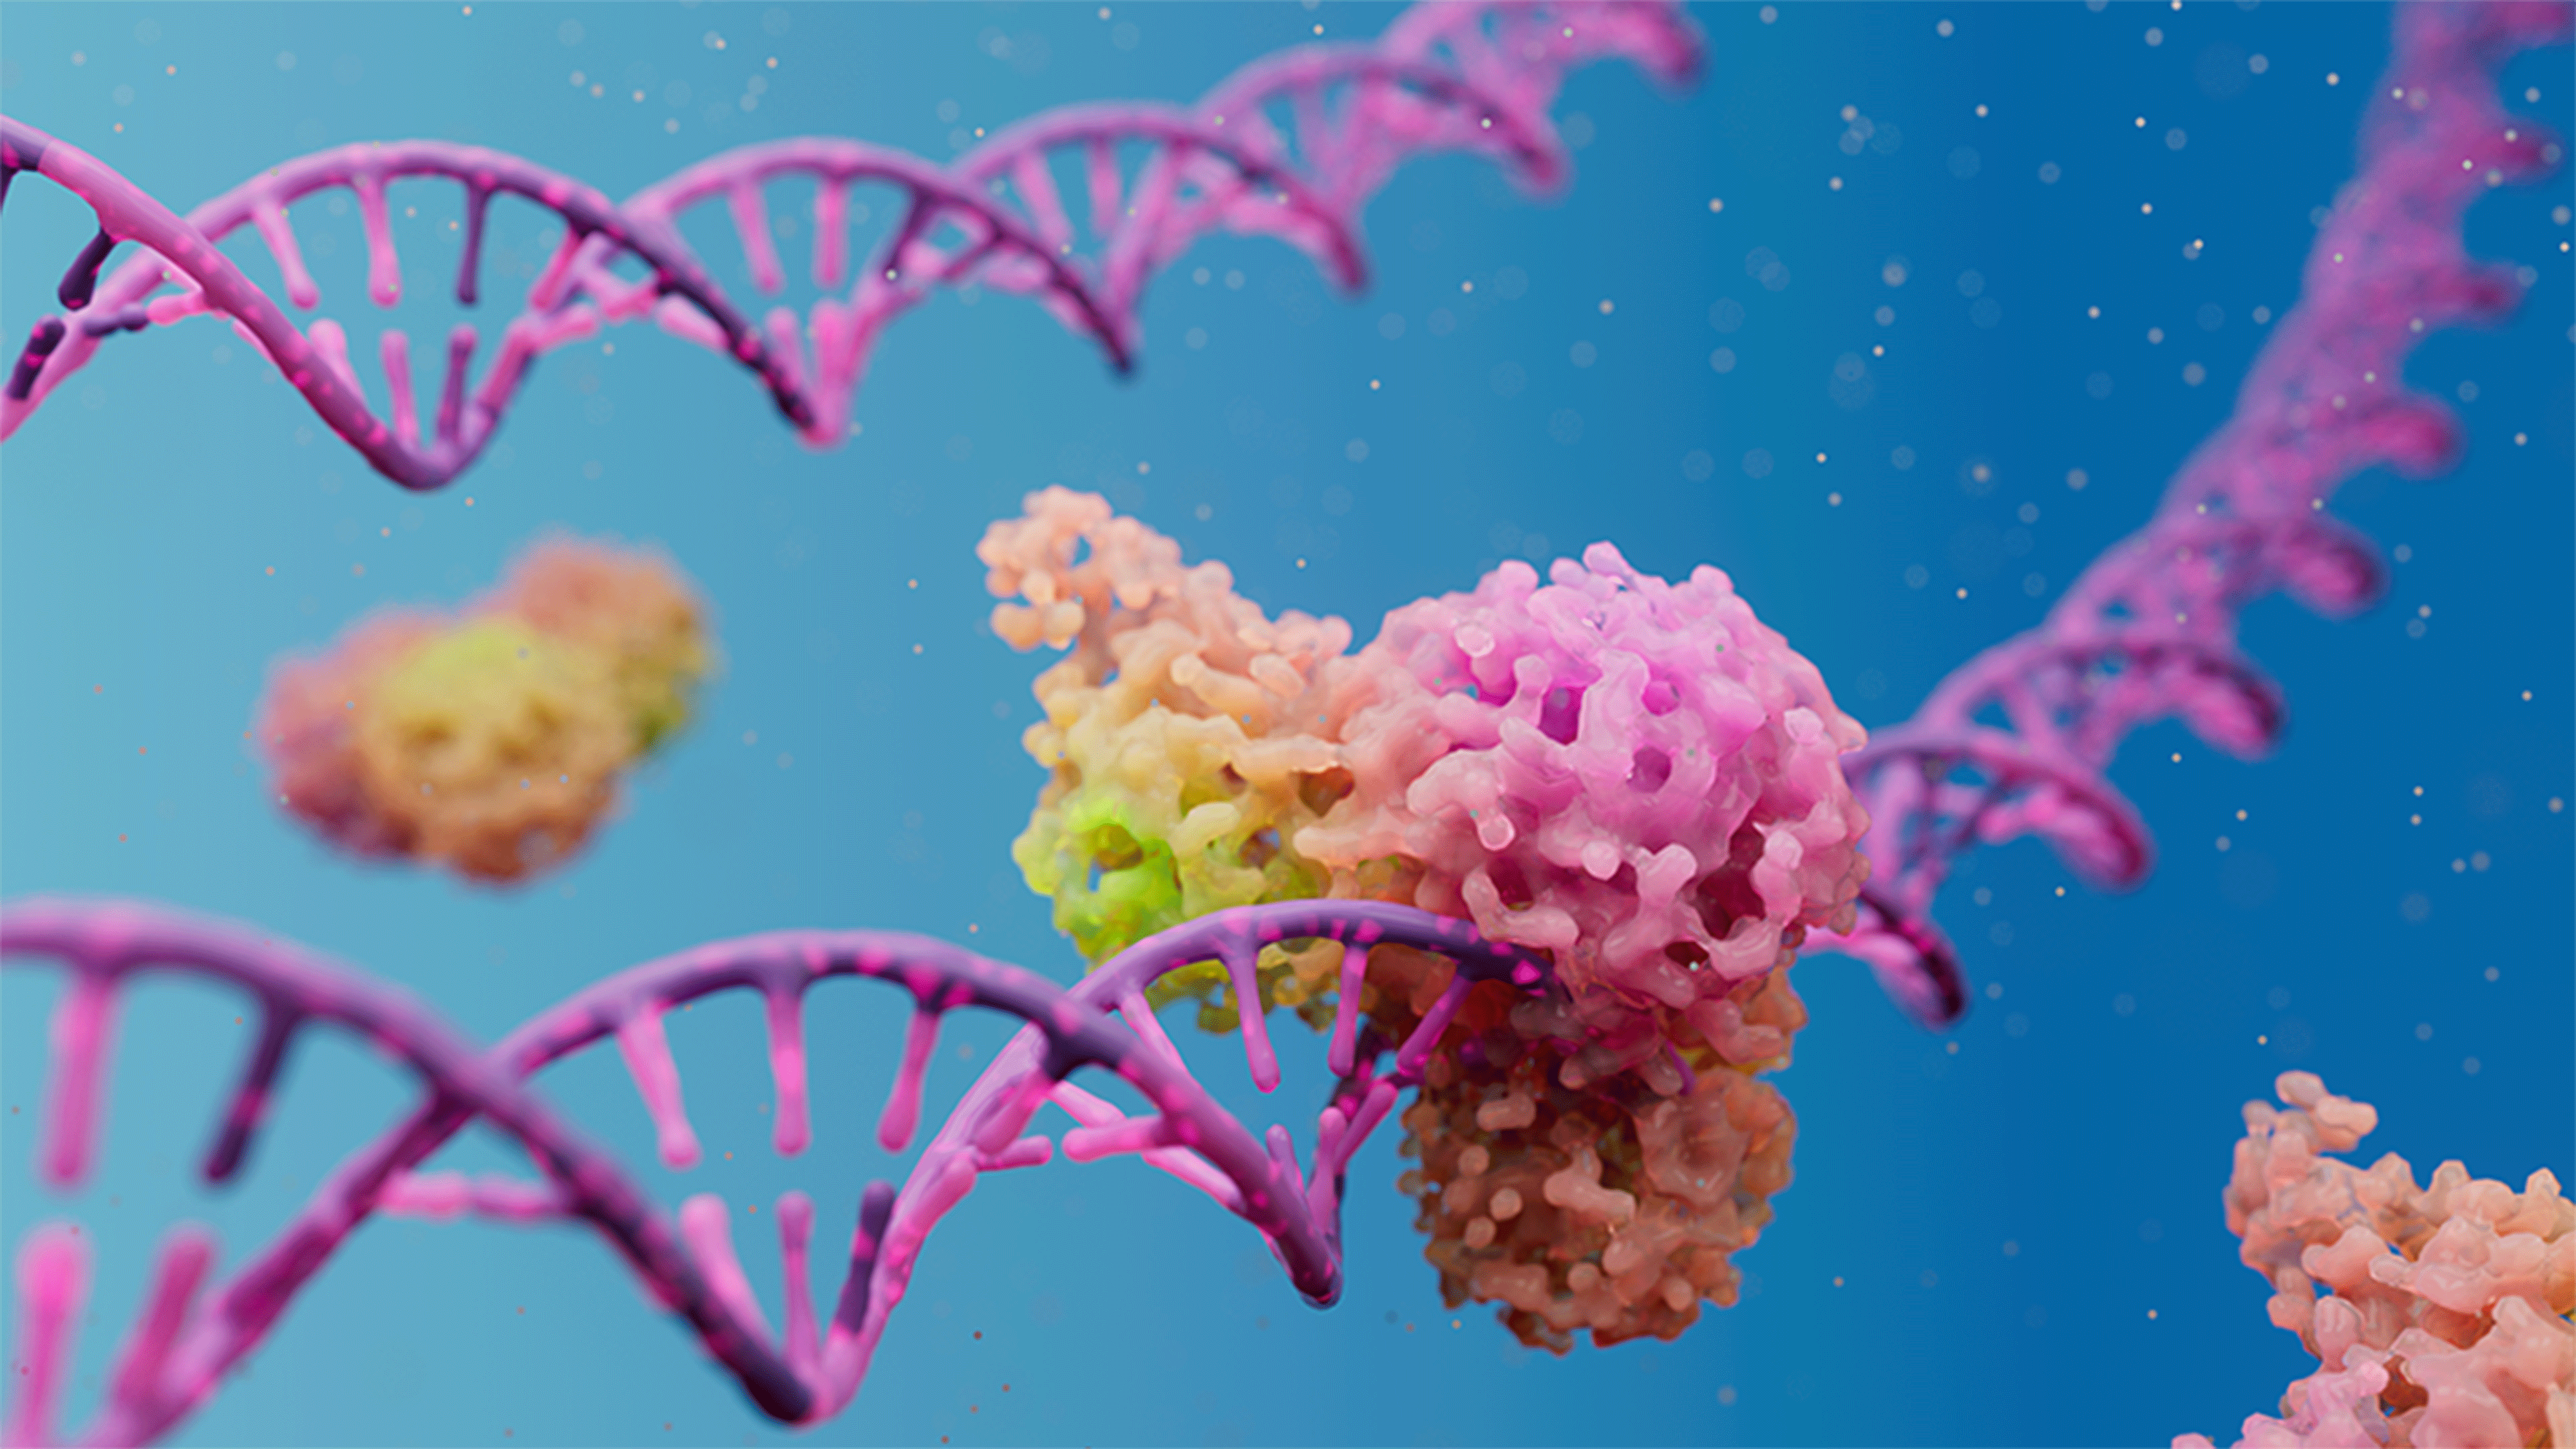 Kolorowy rysunek przedstawiający DNA